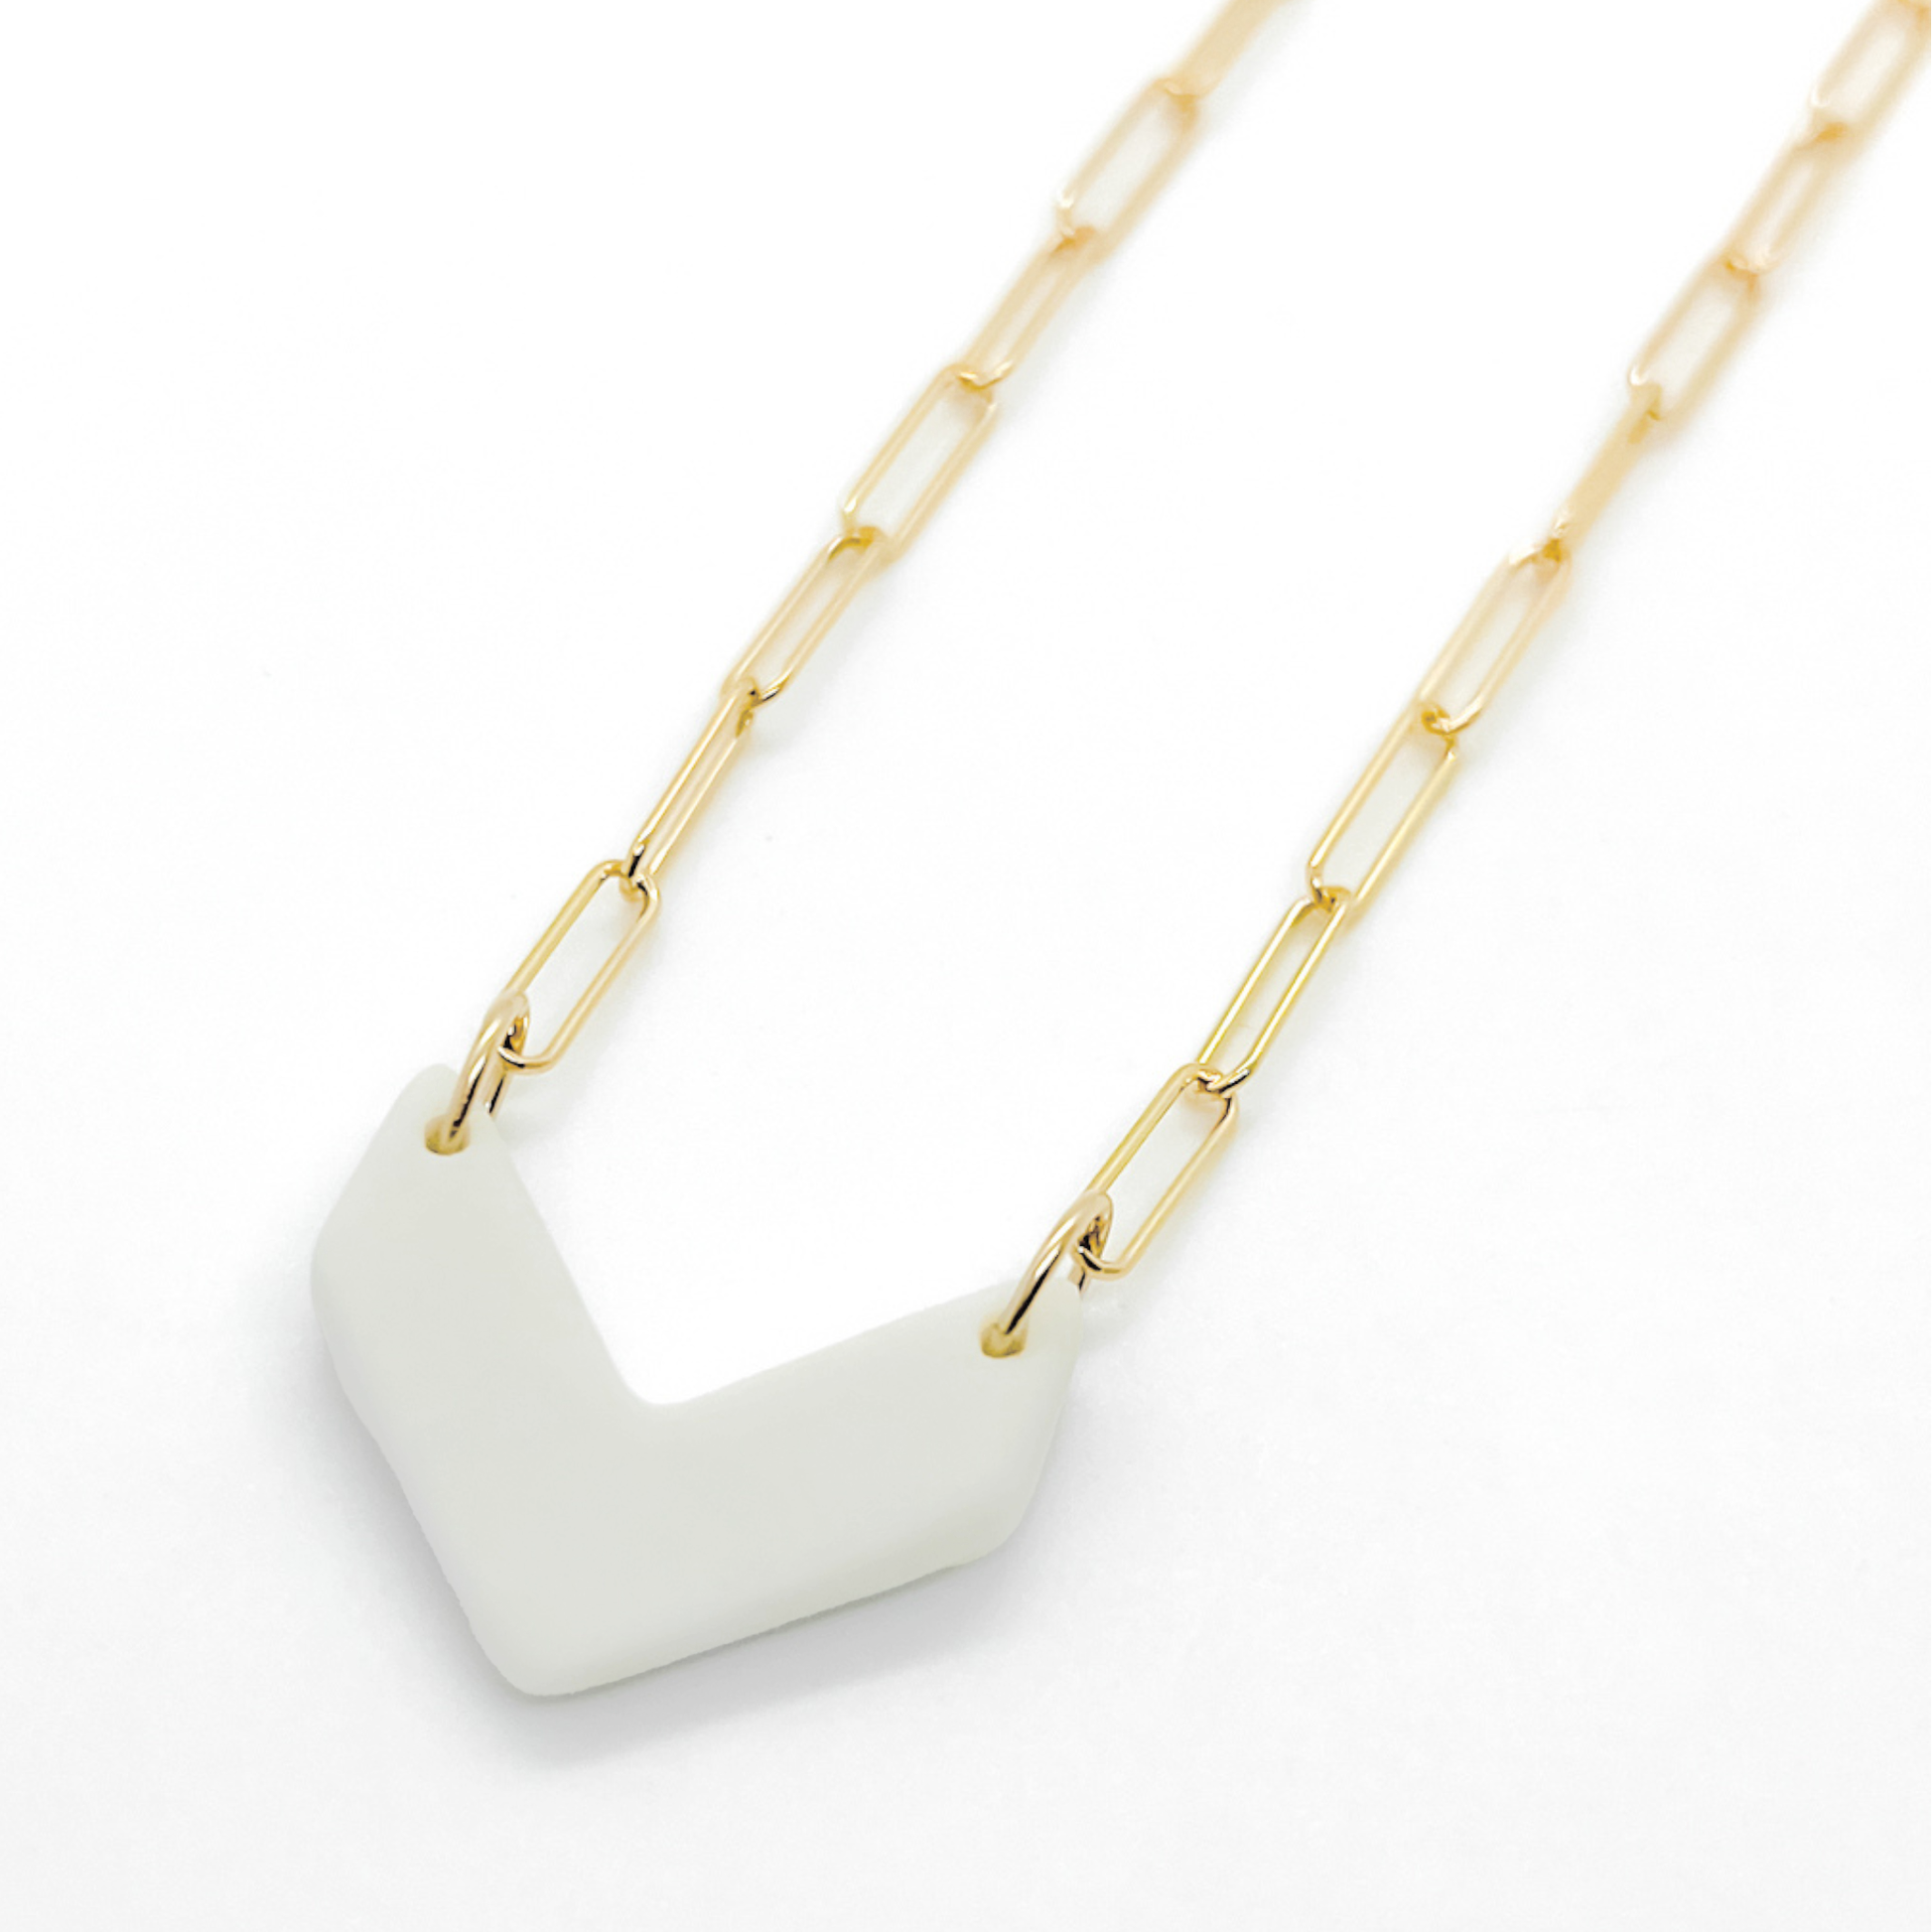 Chevron Pendant Necklace - White Porcelain